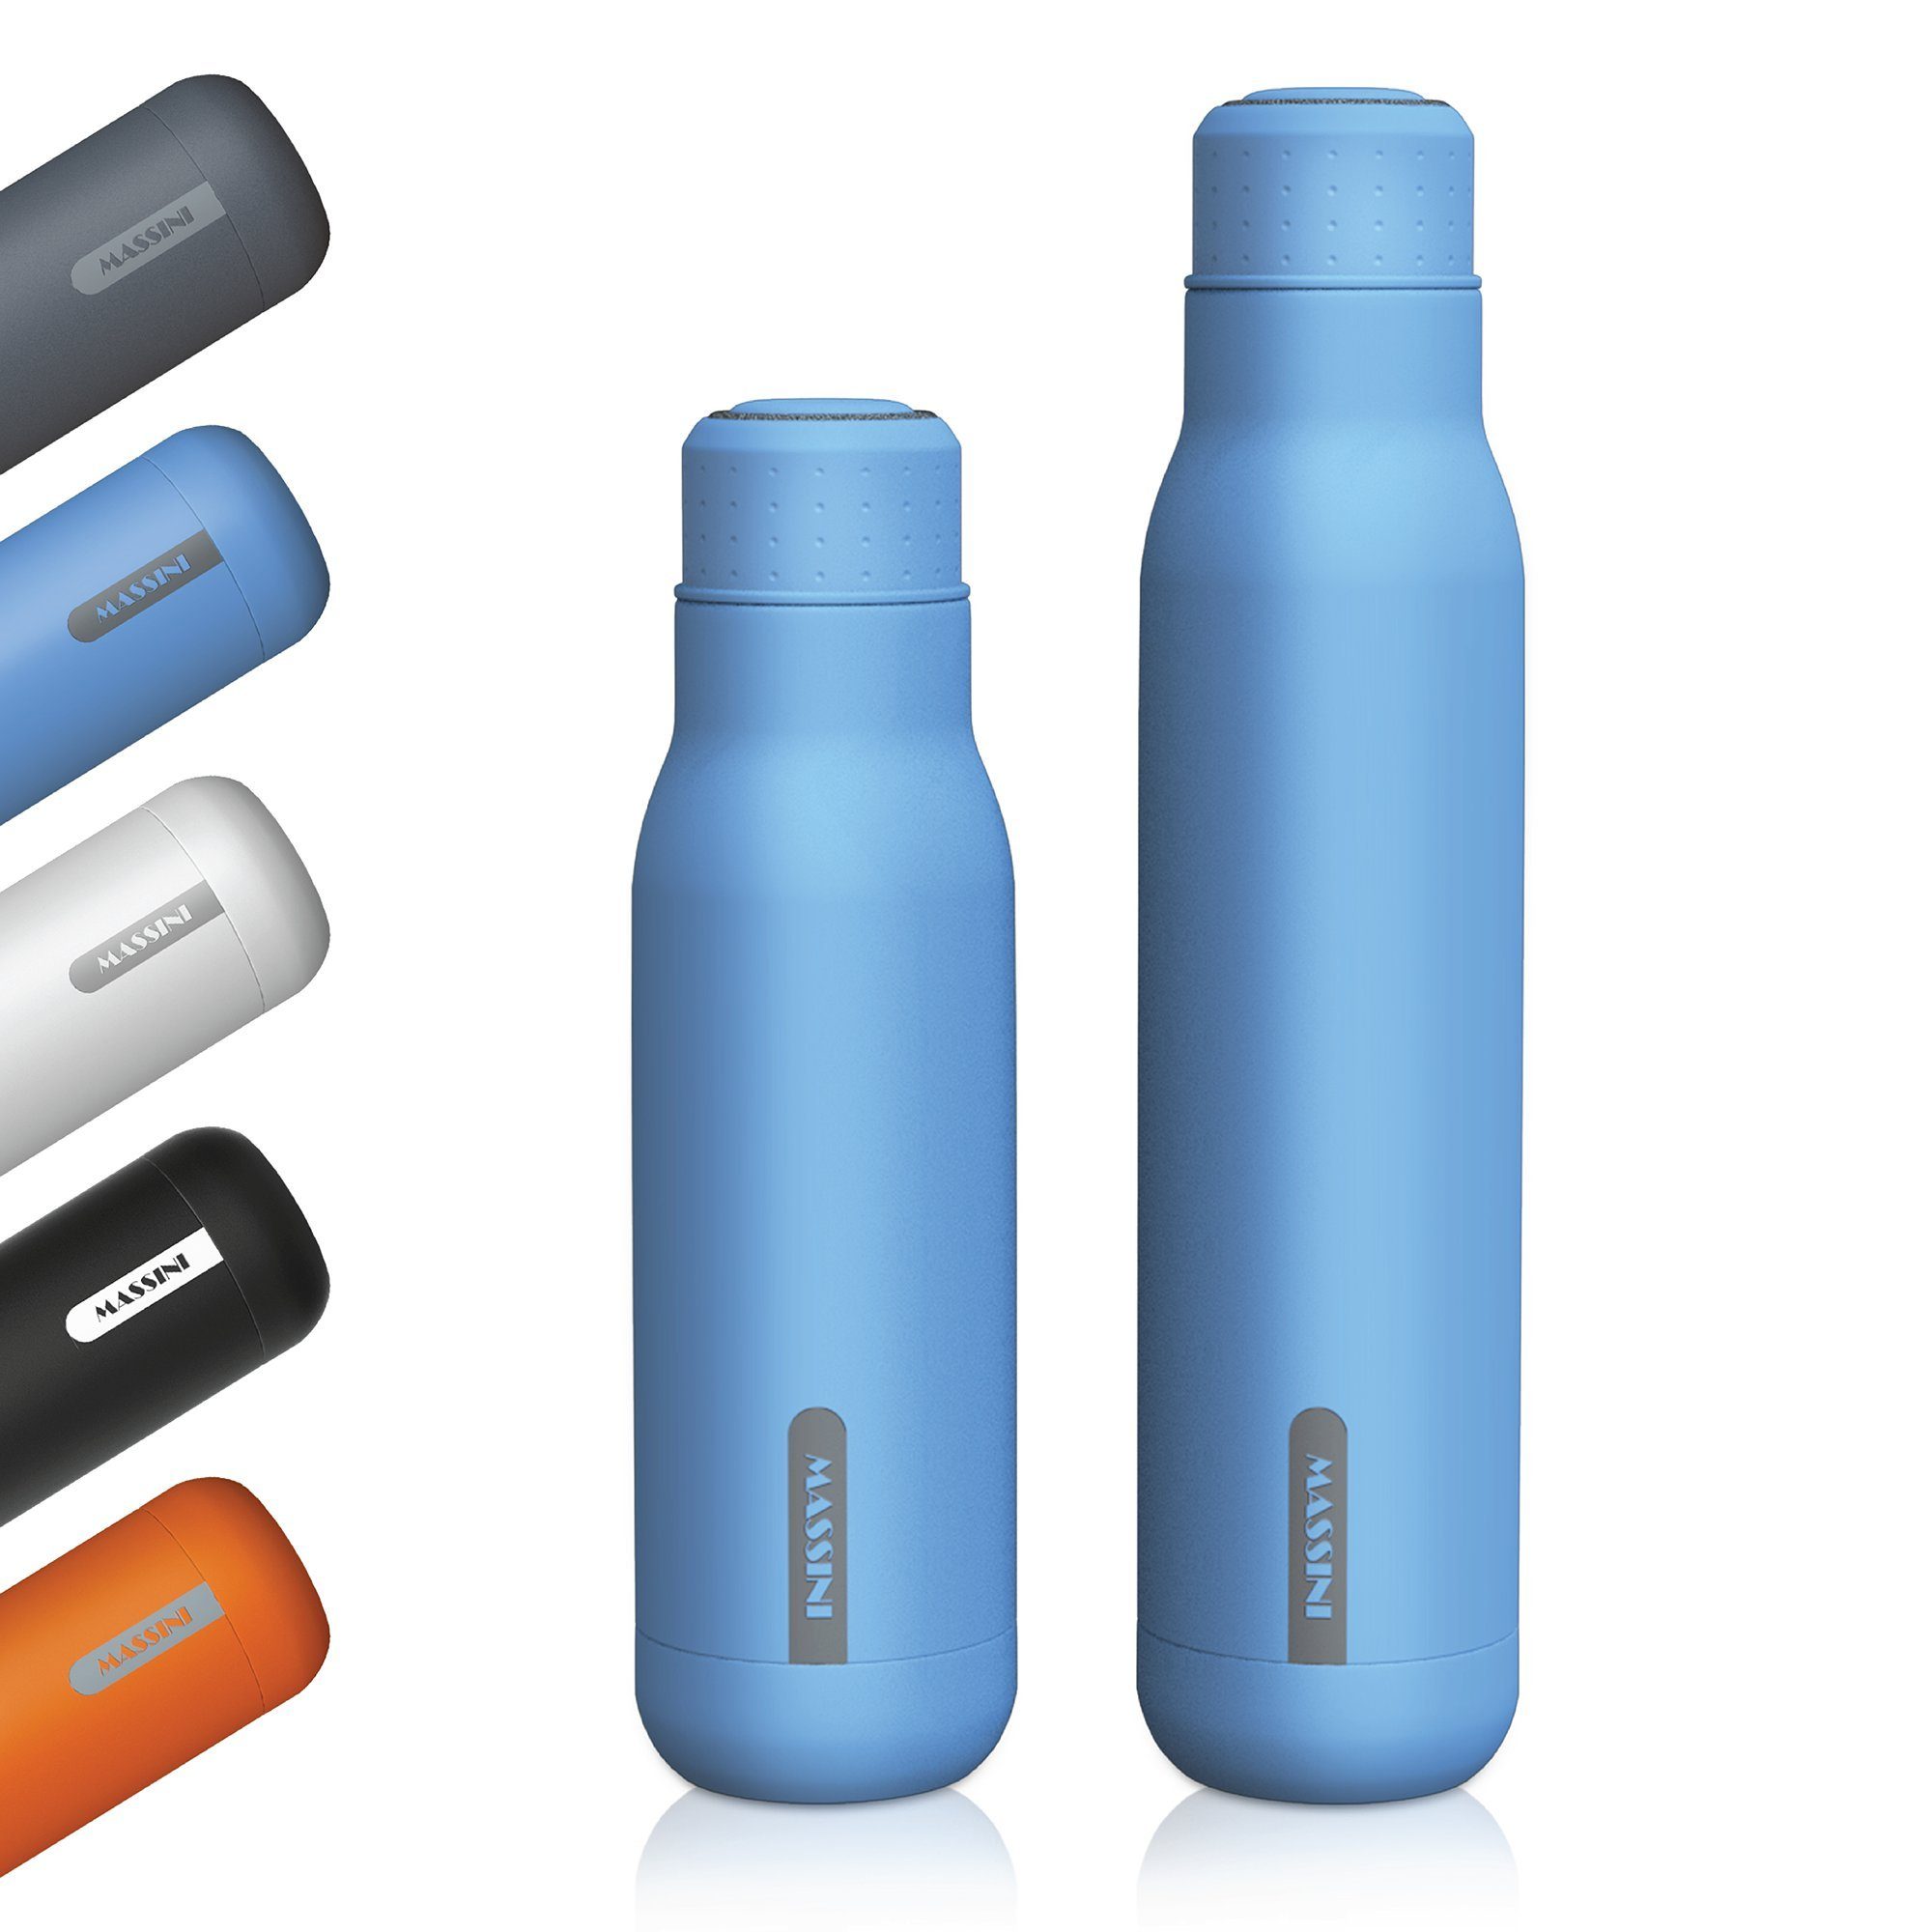 Massini und Isolier- geeignet, Baby Pulverbeschichtung, Blau Trinkflasche BPA-Frei Thermoflasche Design Edelstahl Trinkflasche Auslaufsicher, Kohlensäure